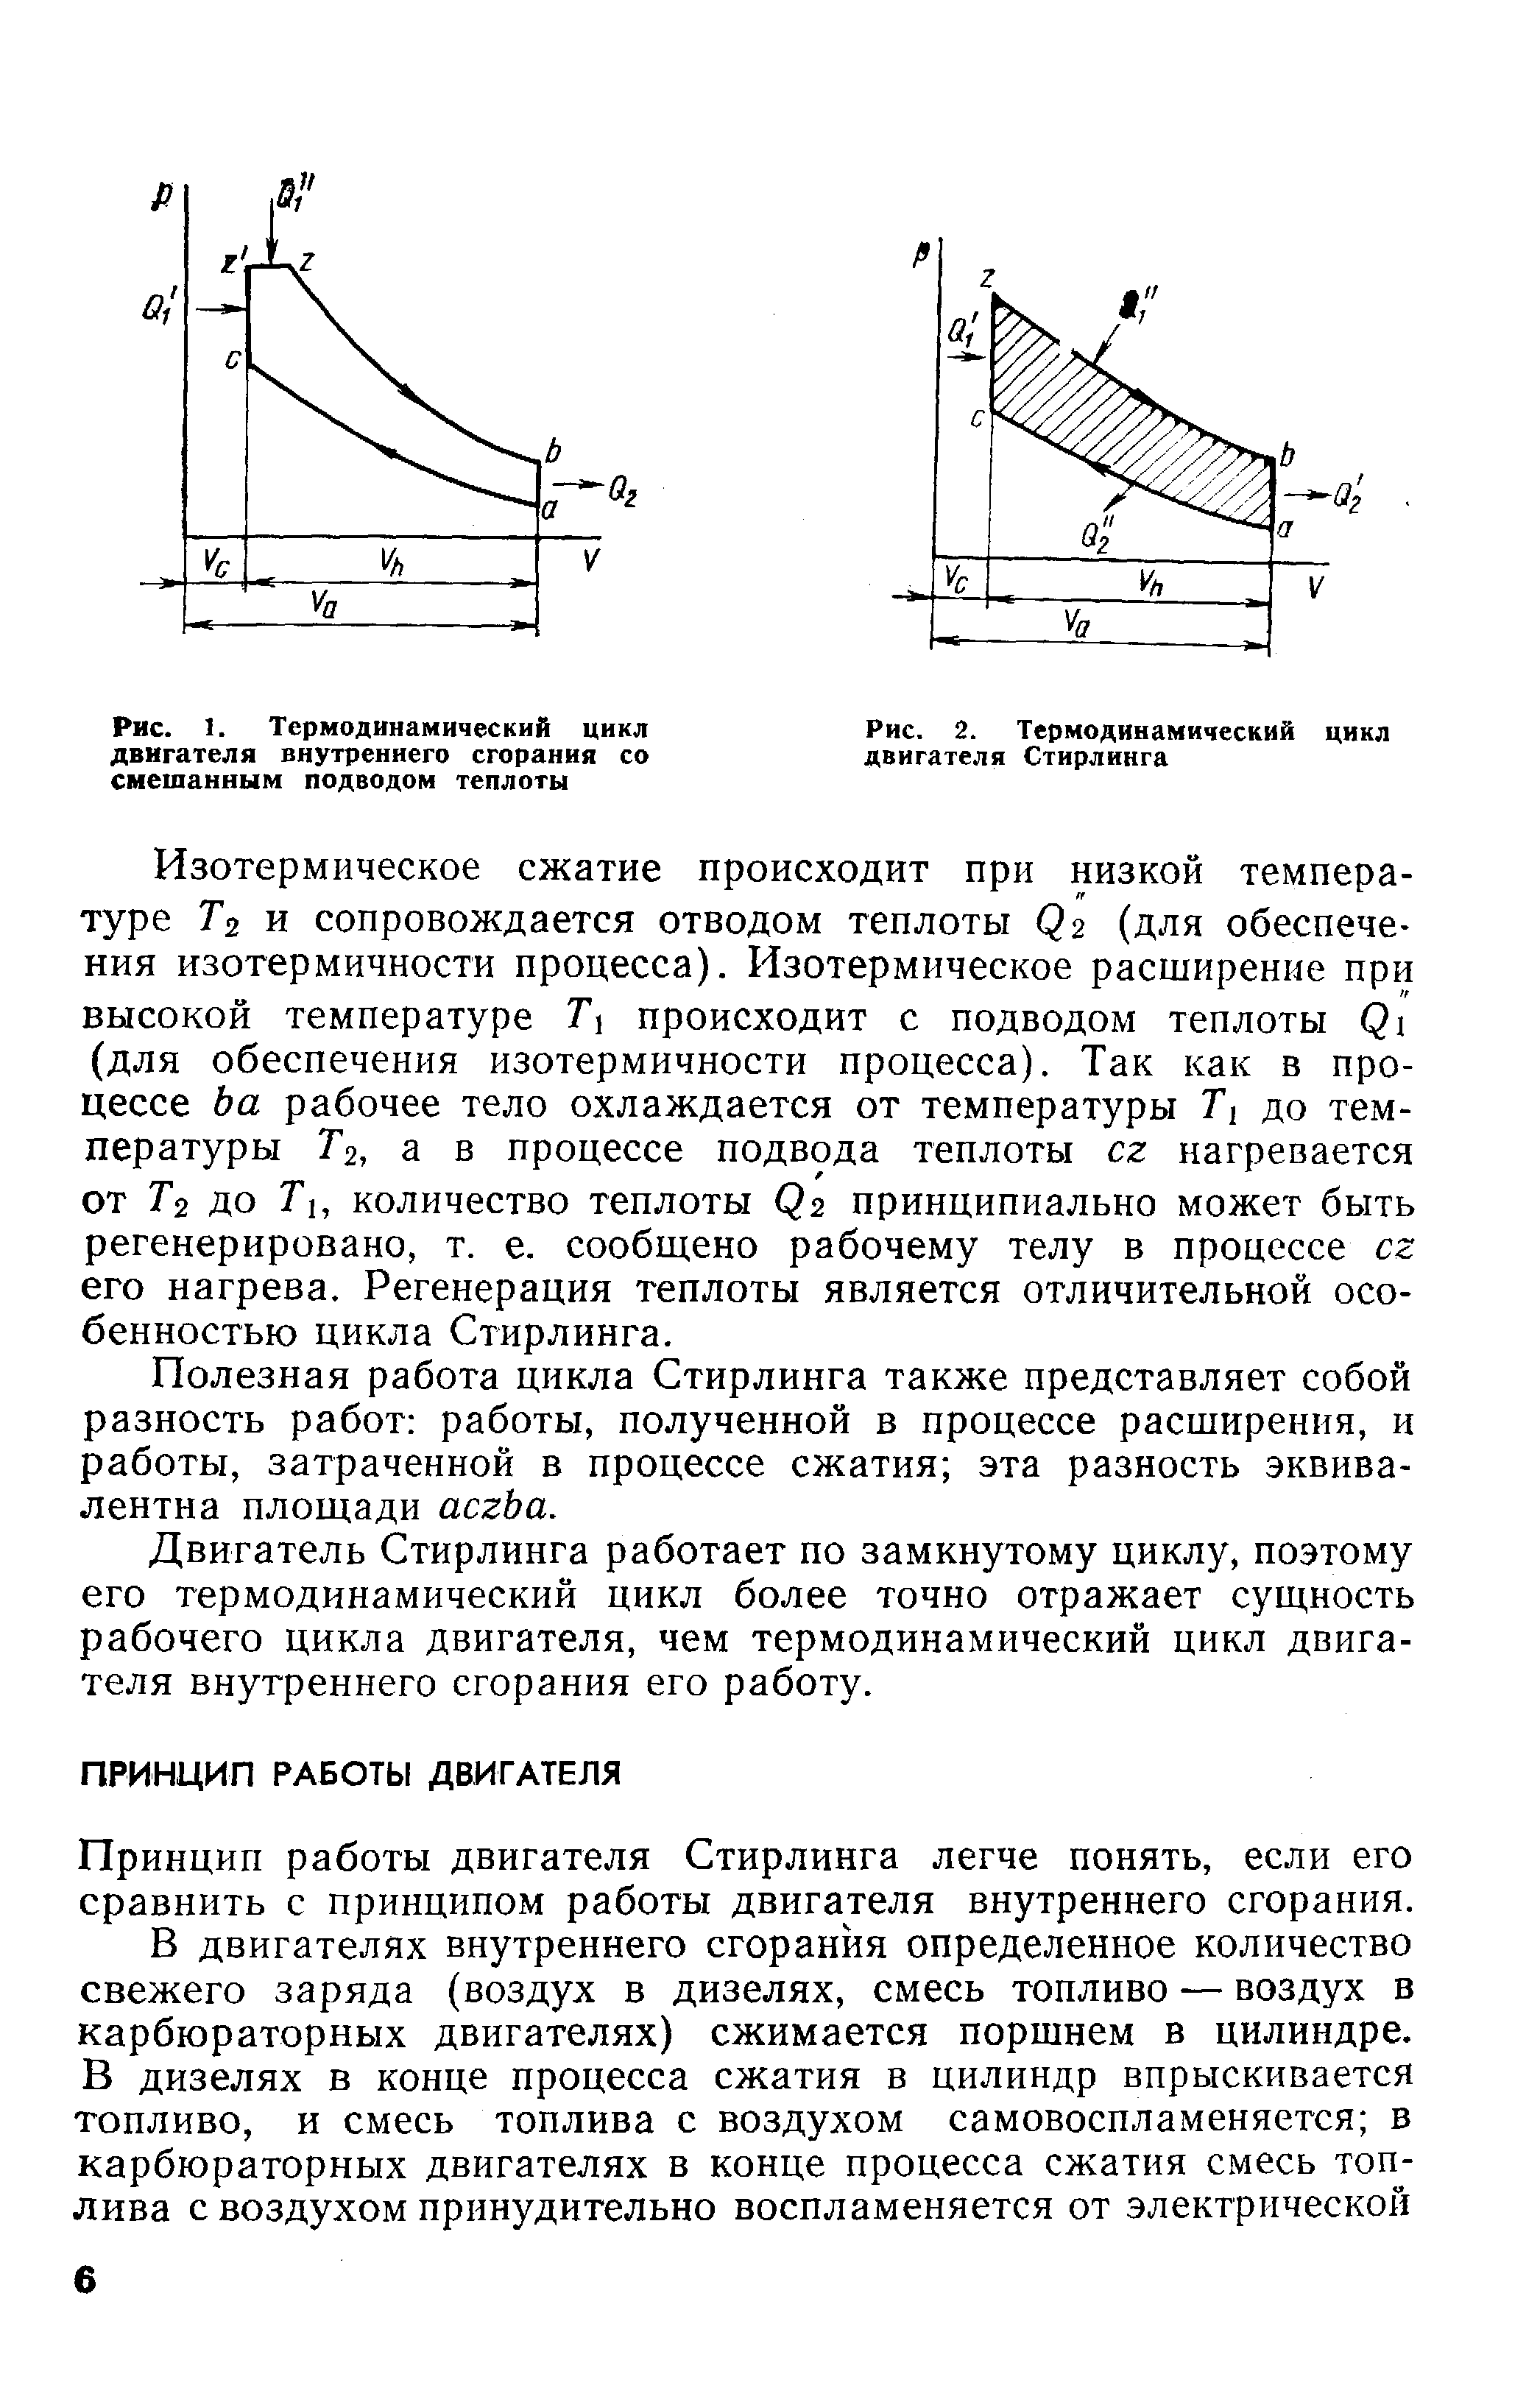 Рис. 2. <a href="/info/19066">Термодинамический цикл</a> двигателя Стирлинга
